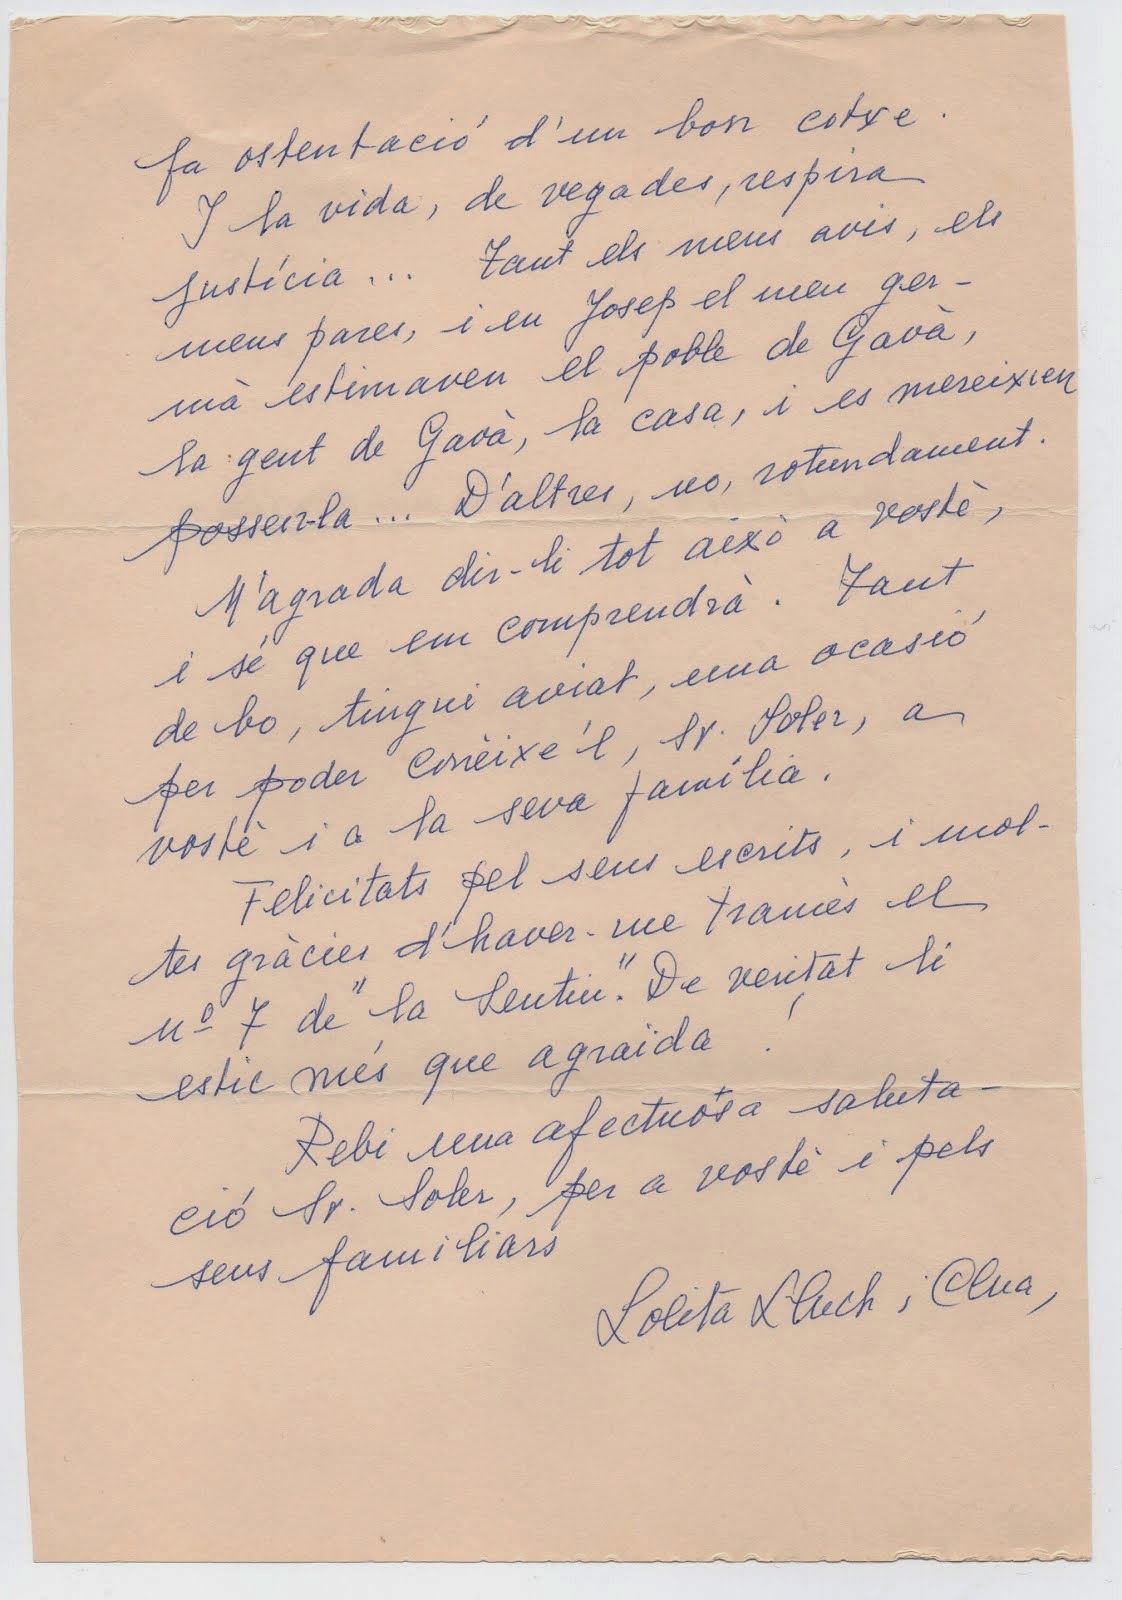 carta de Lolita Lluch a JSV